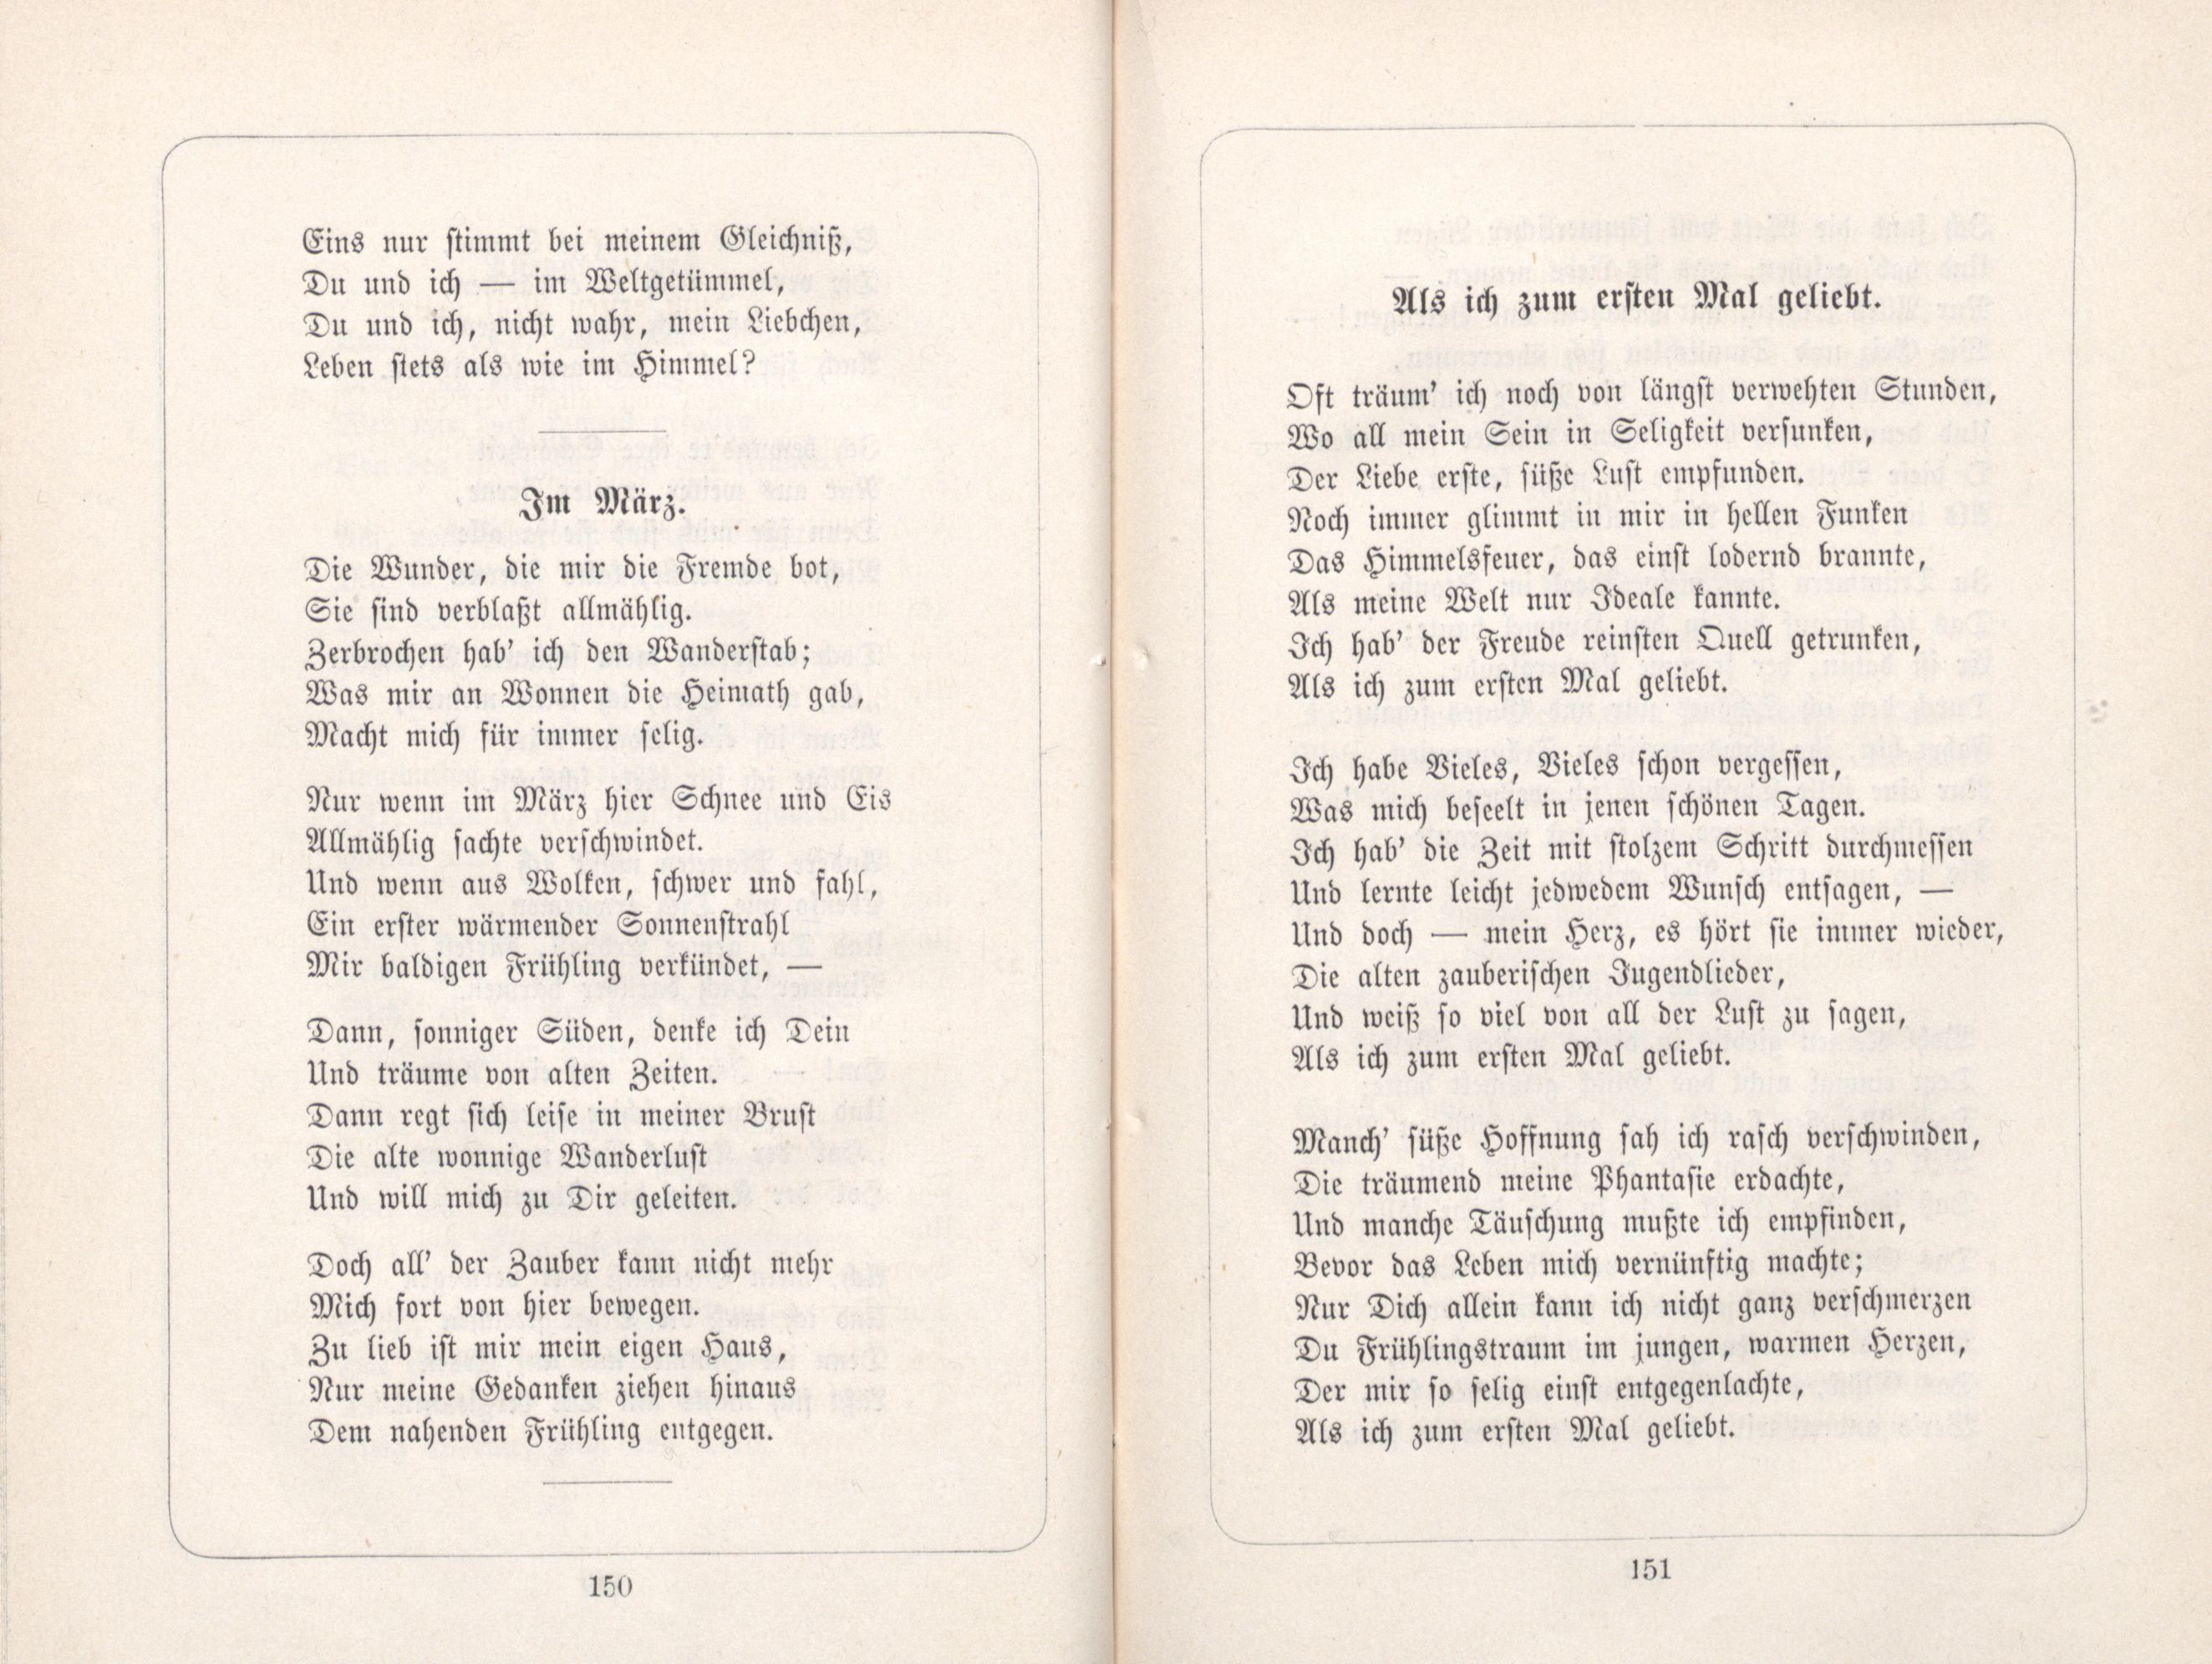 Als ich zum ersten Mal geliebt (1885) | 1. (150-151) Основной текст